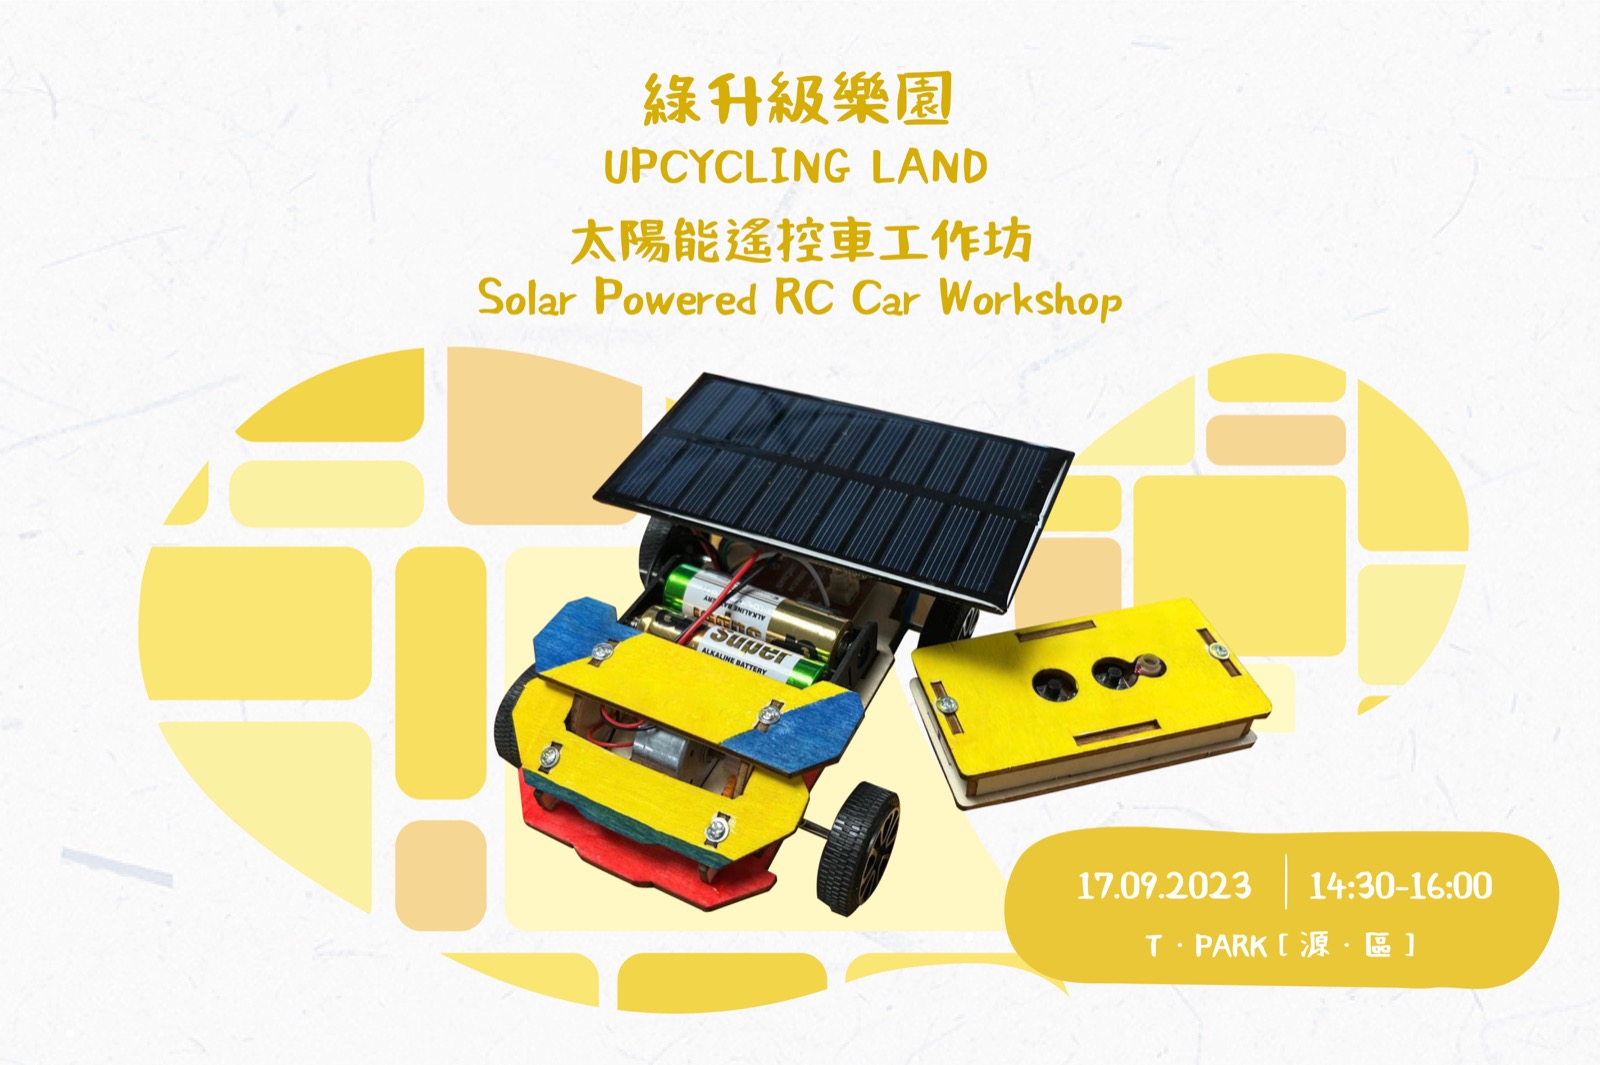 Solar Powered RC Car Workshop